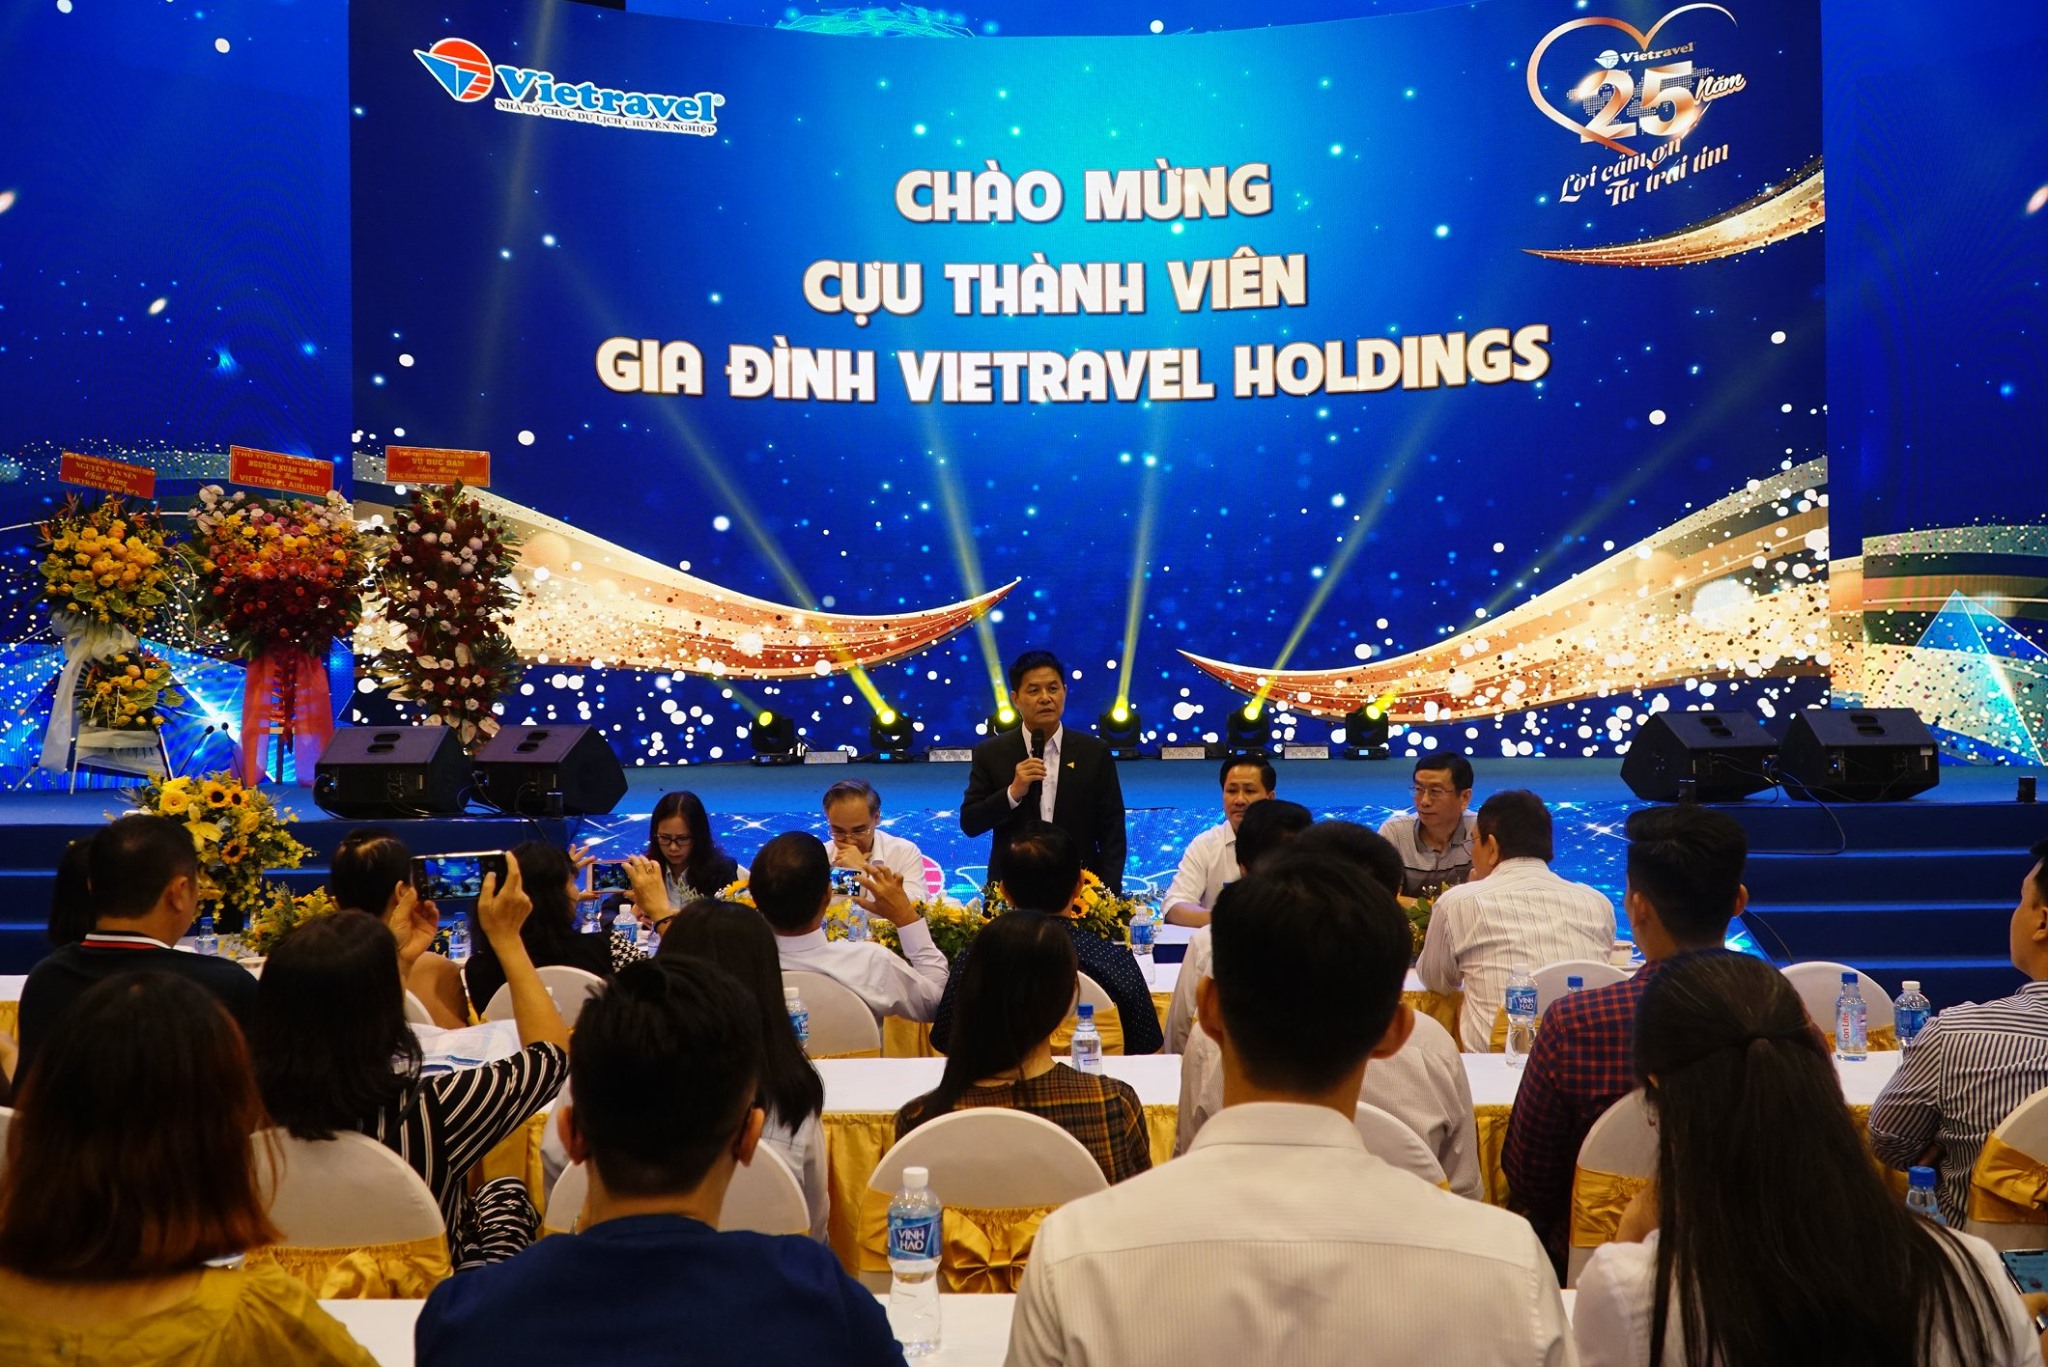 Chiều 27/12/2020, Chủ tịch HĐQT Nguyễn Quốc Kỳ đã có buổi gặp gỡ cựu thành viên của Vietravel Holdings.